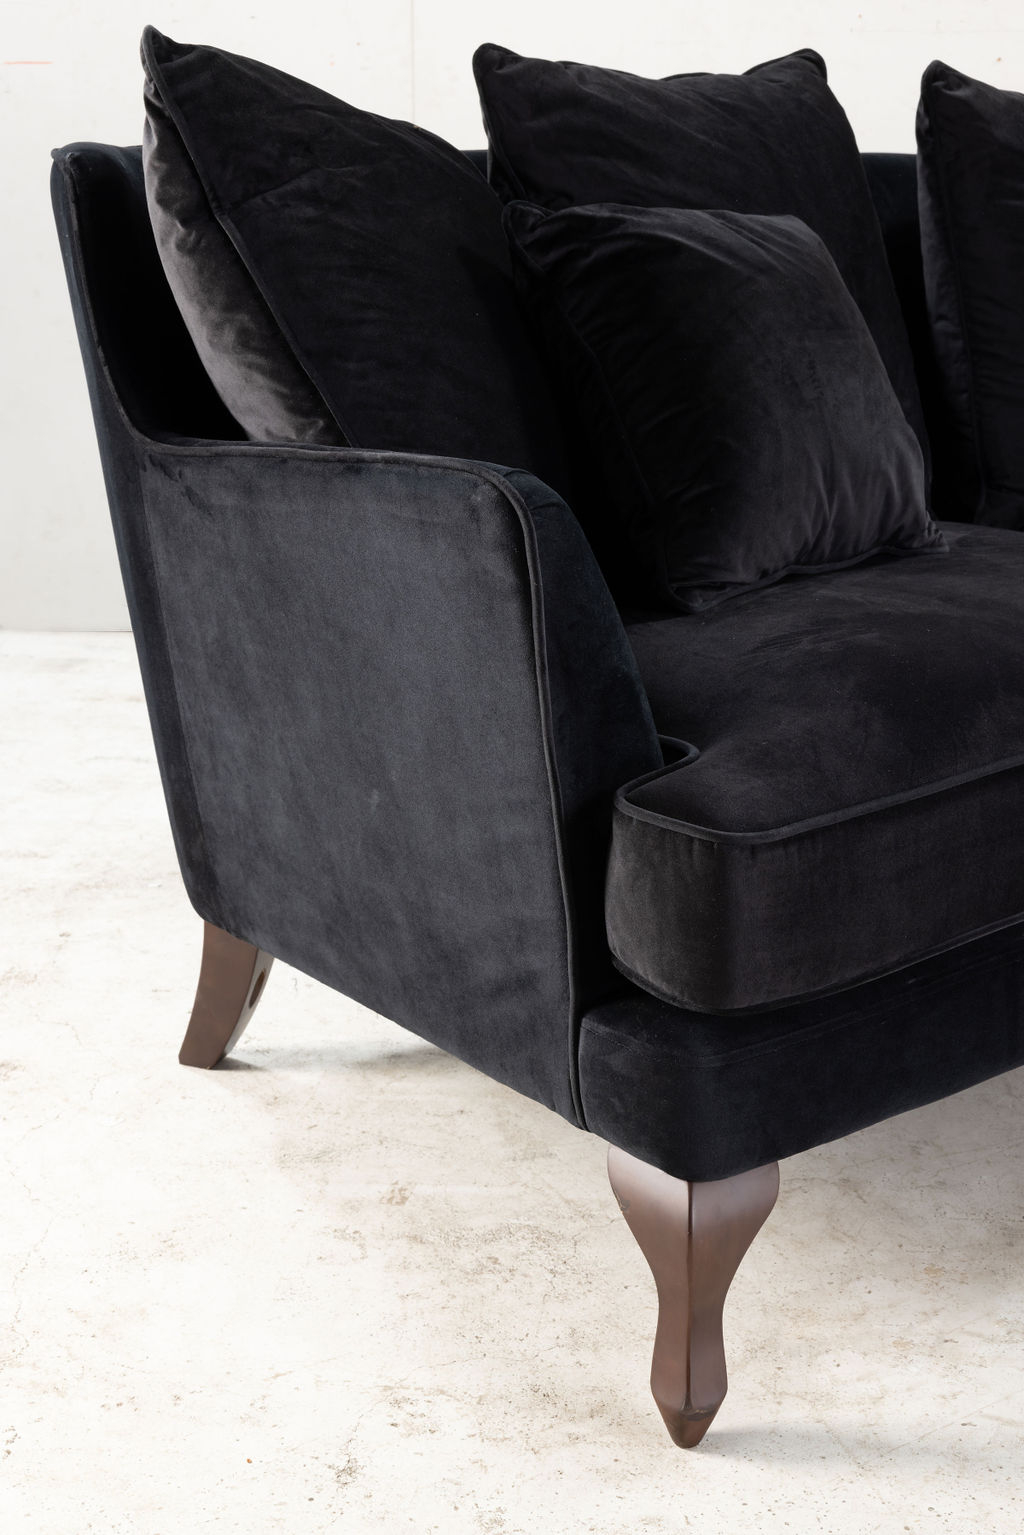 3 seater black upholstered sofa 